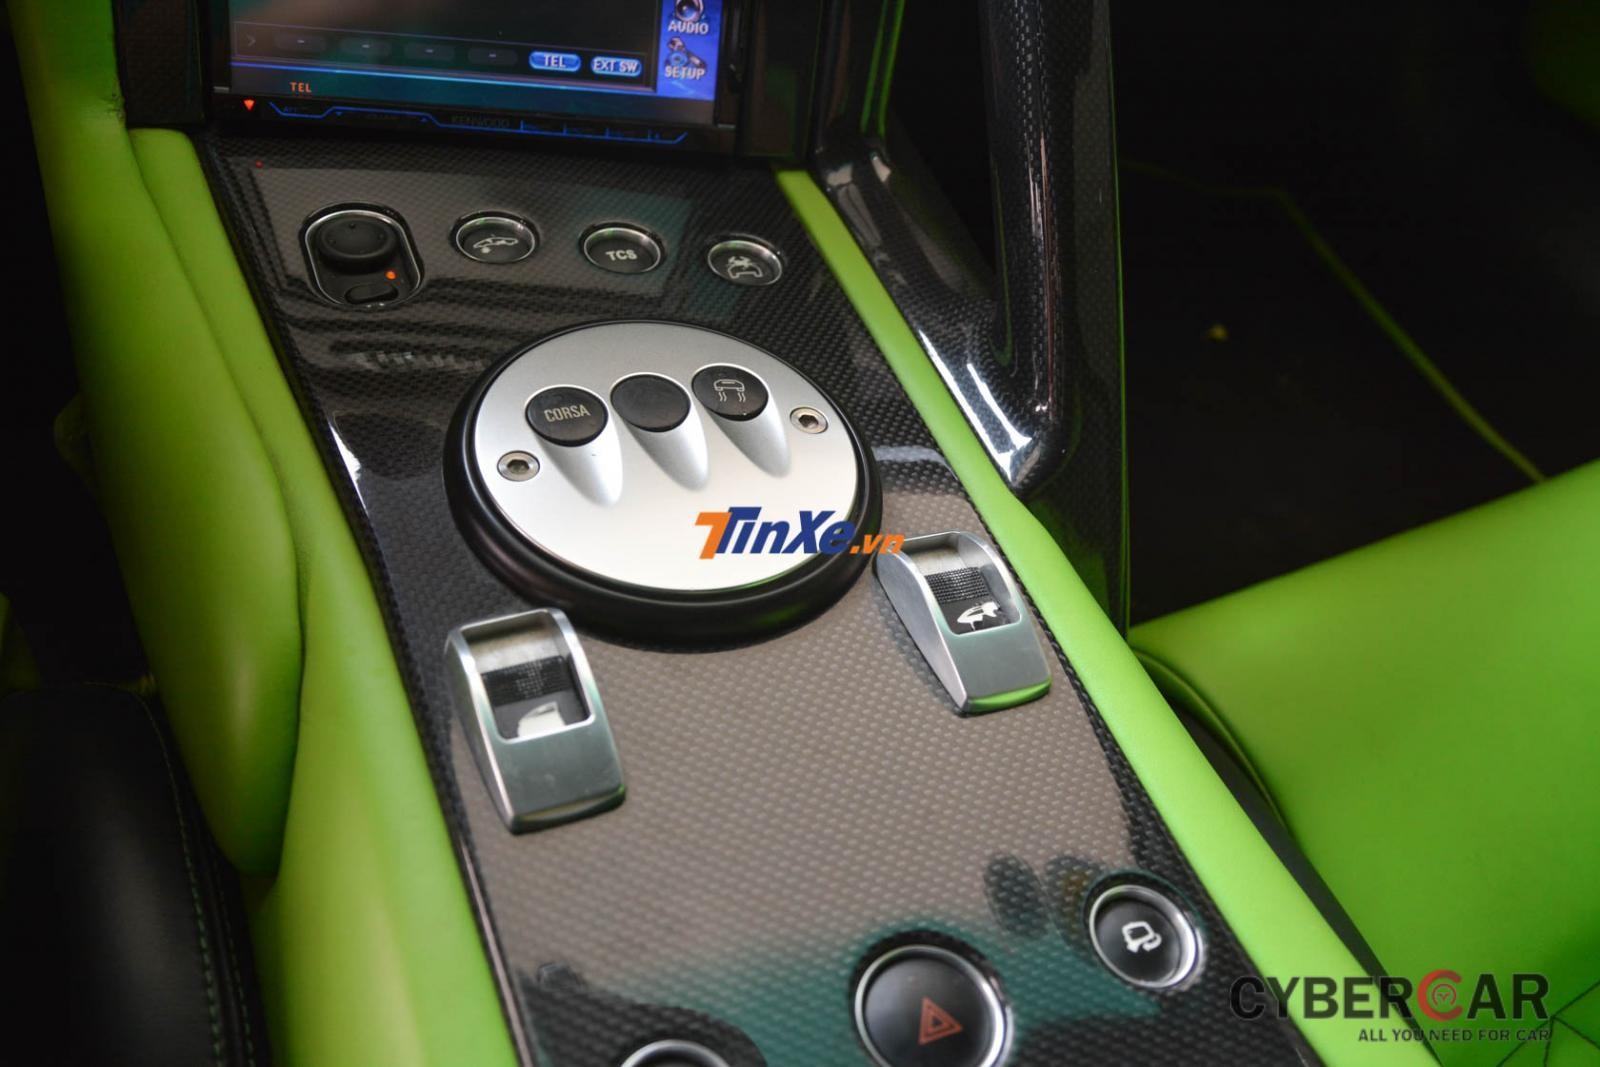  Cận cảnh bảng điều khiển trung tâm của Lamborghini Murcielago LP640 mang màu sơn xanh cốm